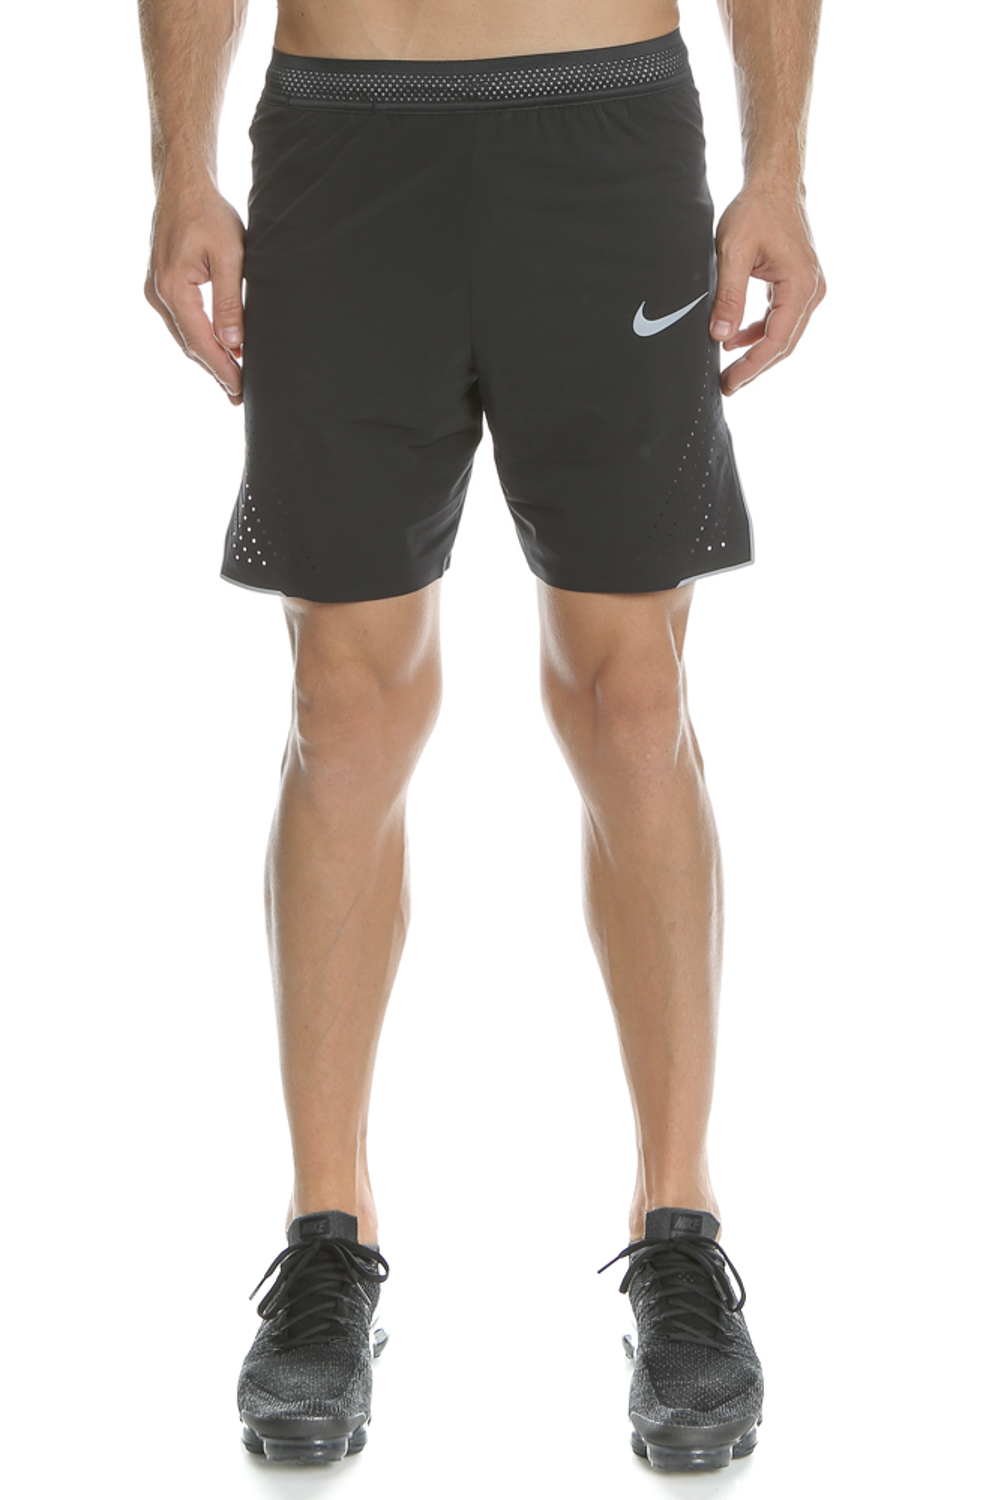 Ανδρικά/Ρούχα/Σορτς-Βερμούδες/Αθλητικά NIKE - Ανδρική αθλητική βερμούδα Nike μαύρη